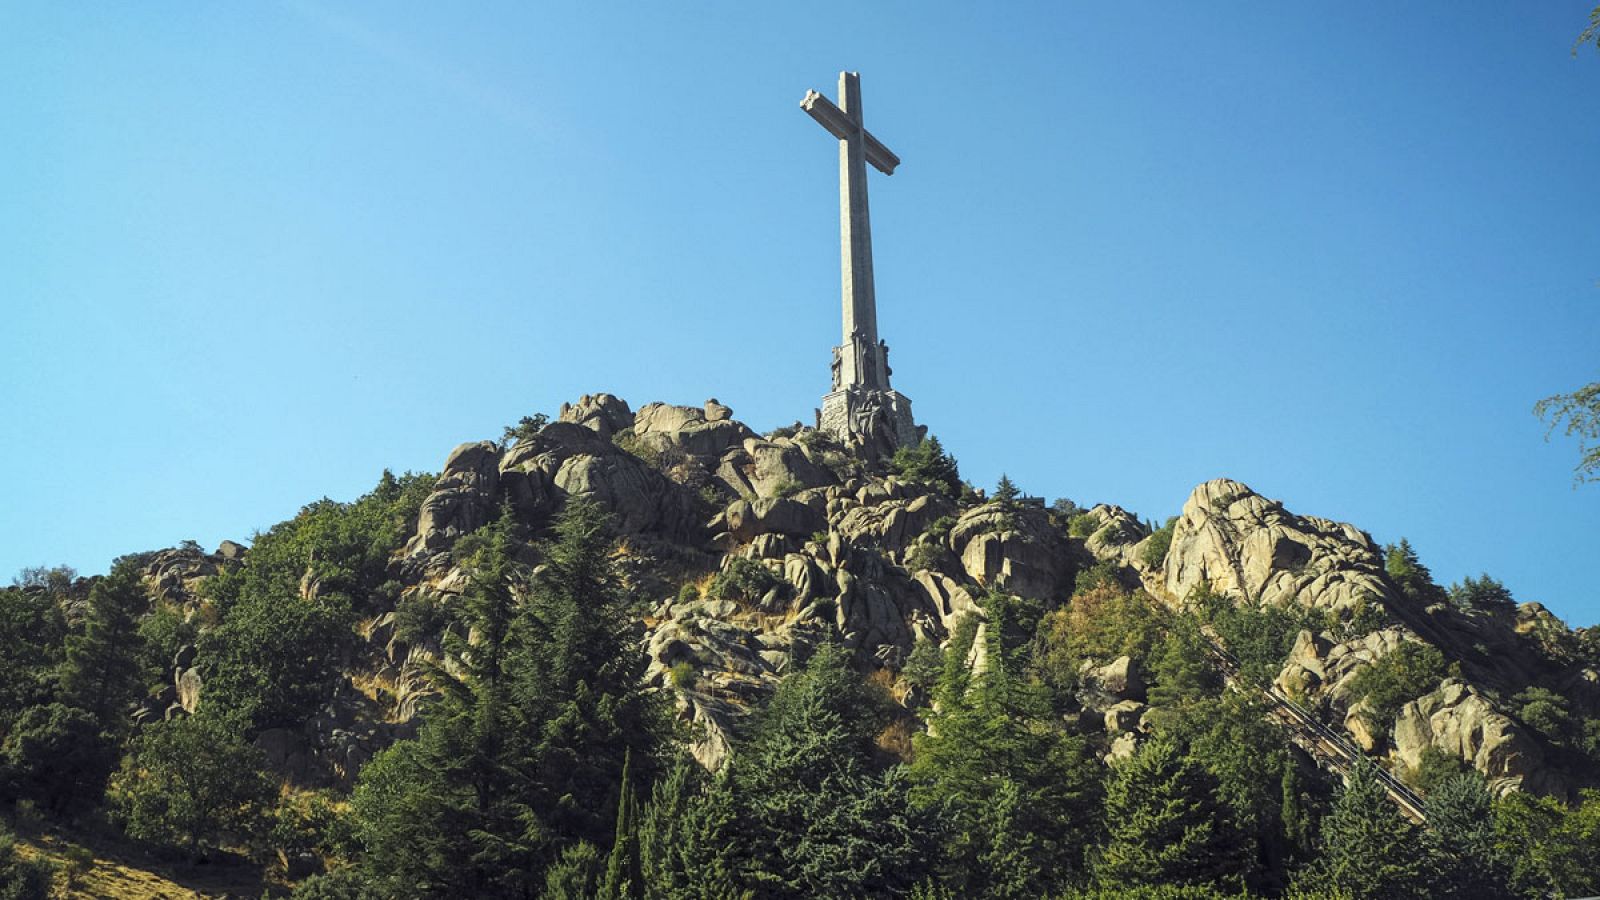 Vista general del Valle de los Caídos, un monumento construido entre 1940 y 1958, considerado como el mayor símbolo del franquismo en España